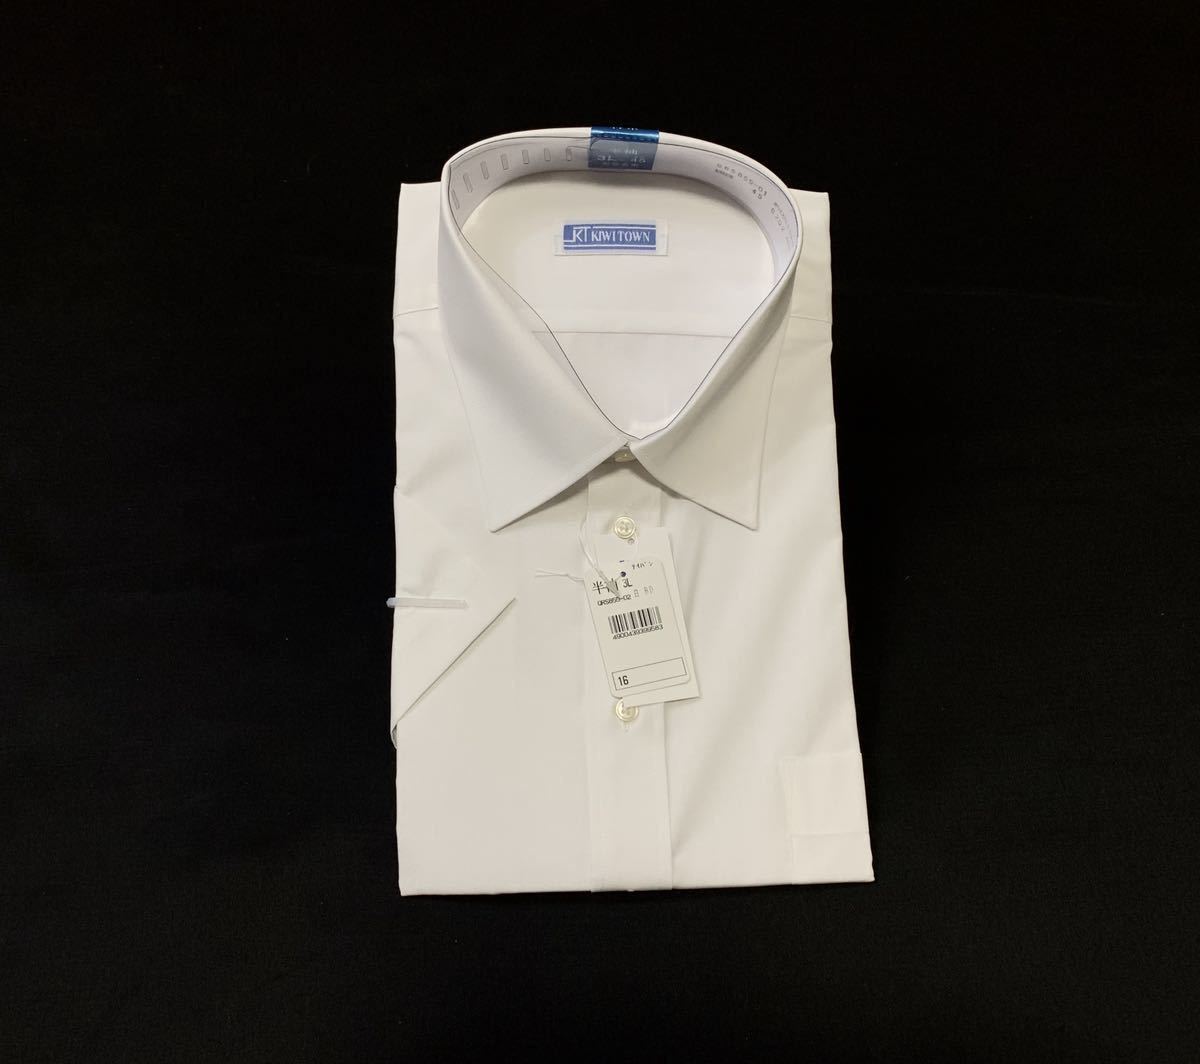 (未使用) KIWI TOWN // COOLBIZ 形態安定 半袖 シャツ・ワイシャツ (白) サイズ 45-半袖 (3L)_画像1